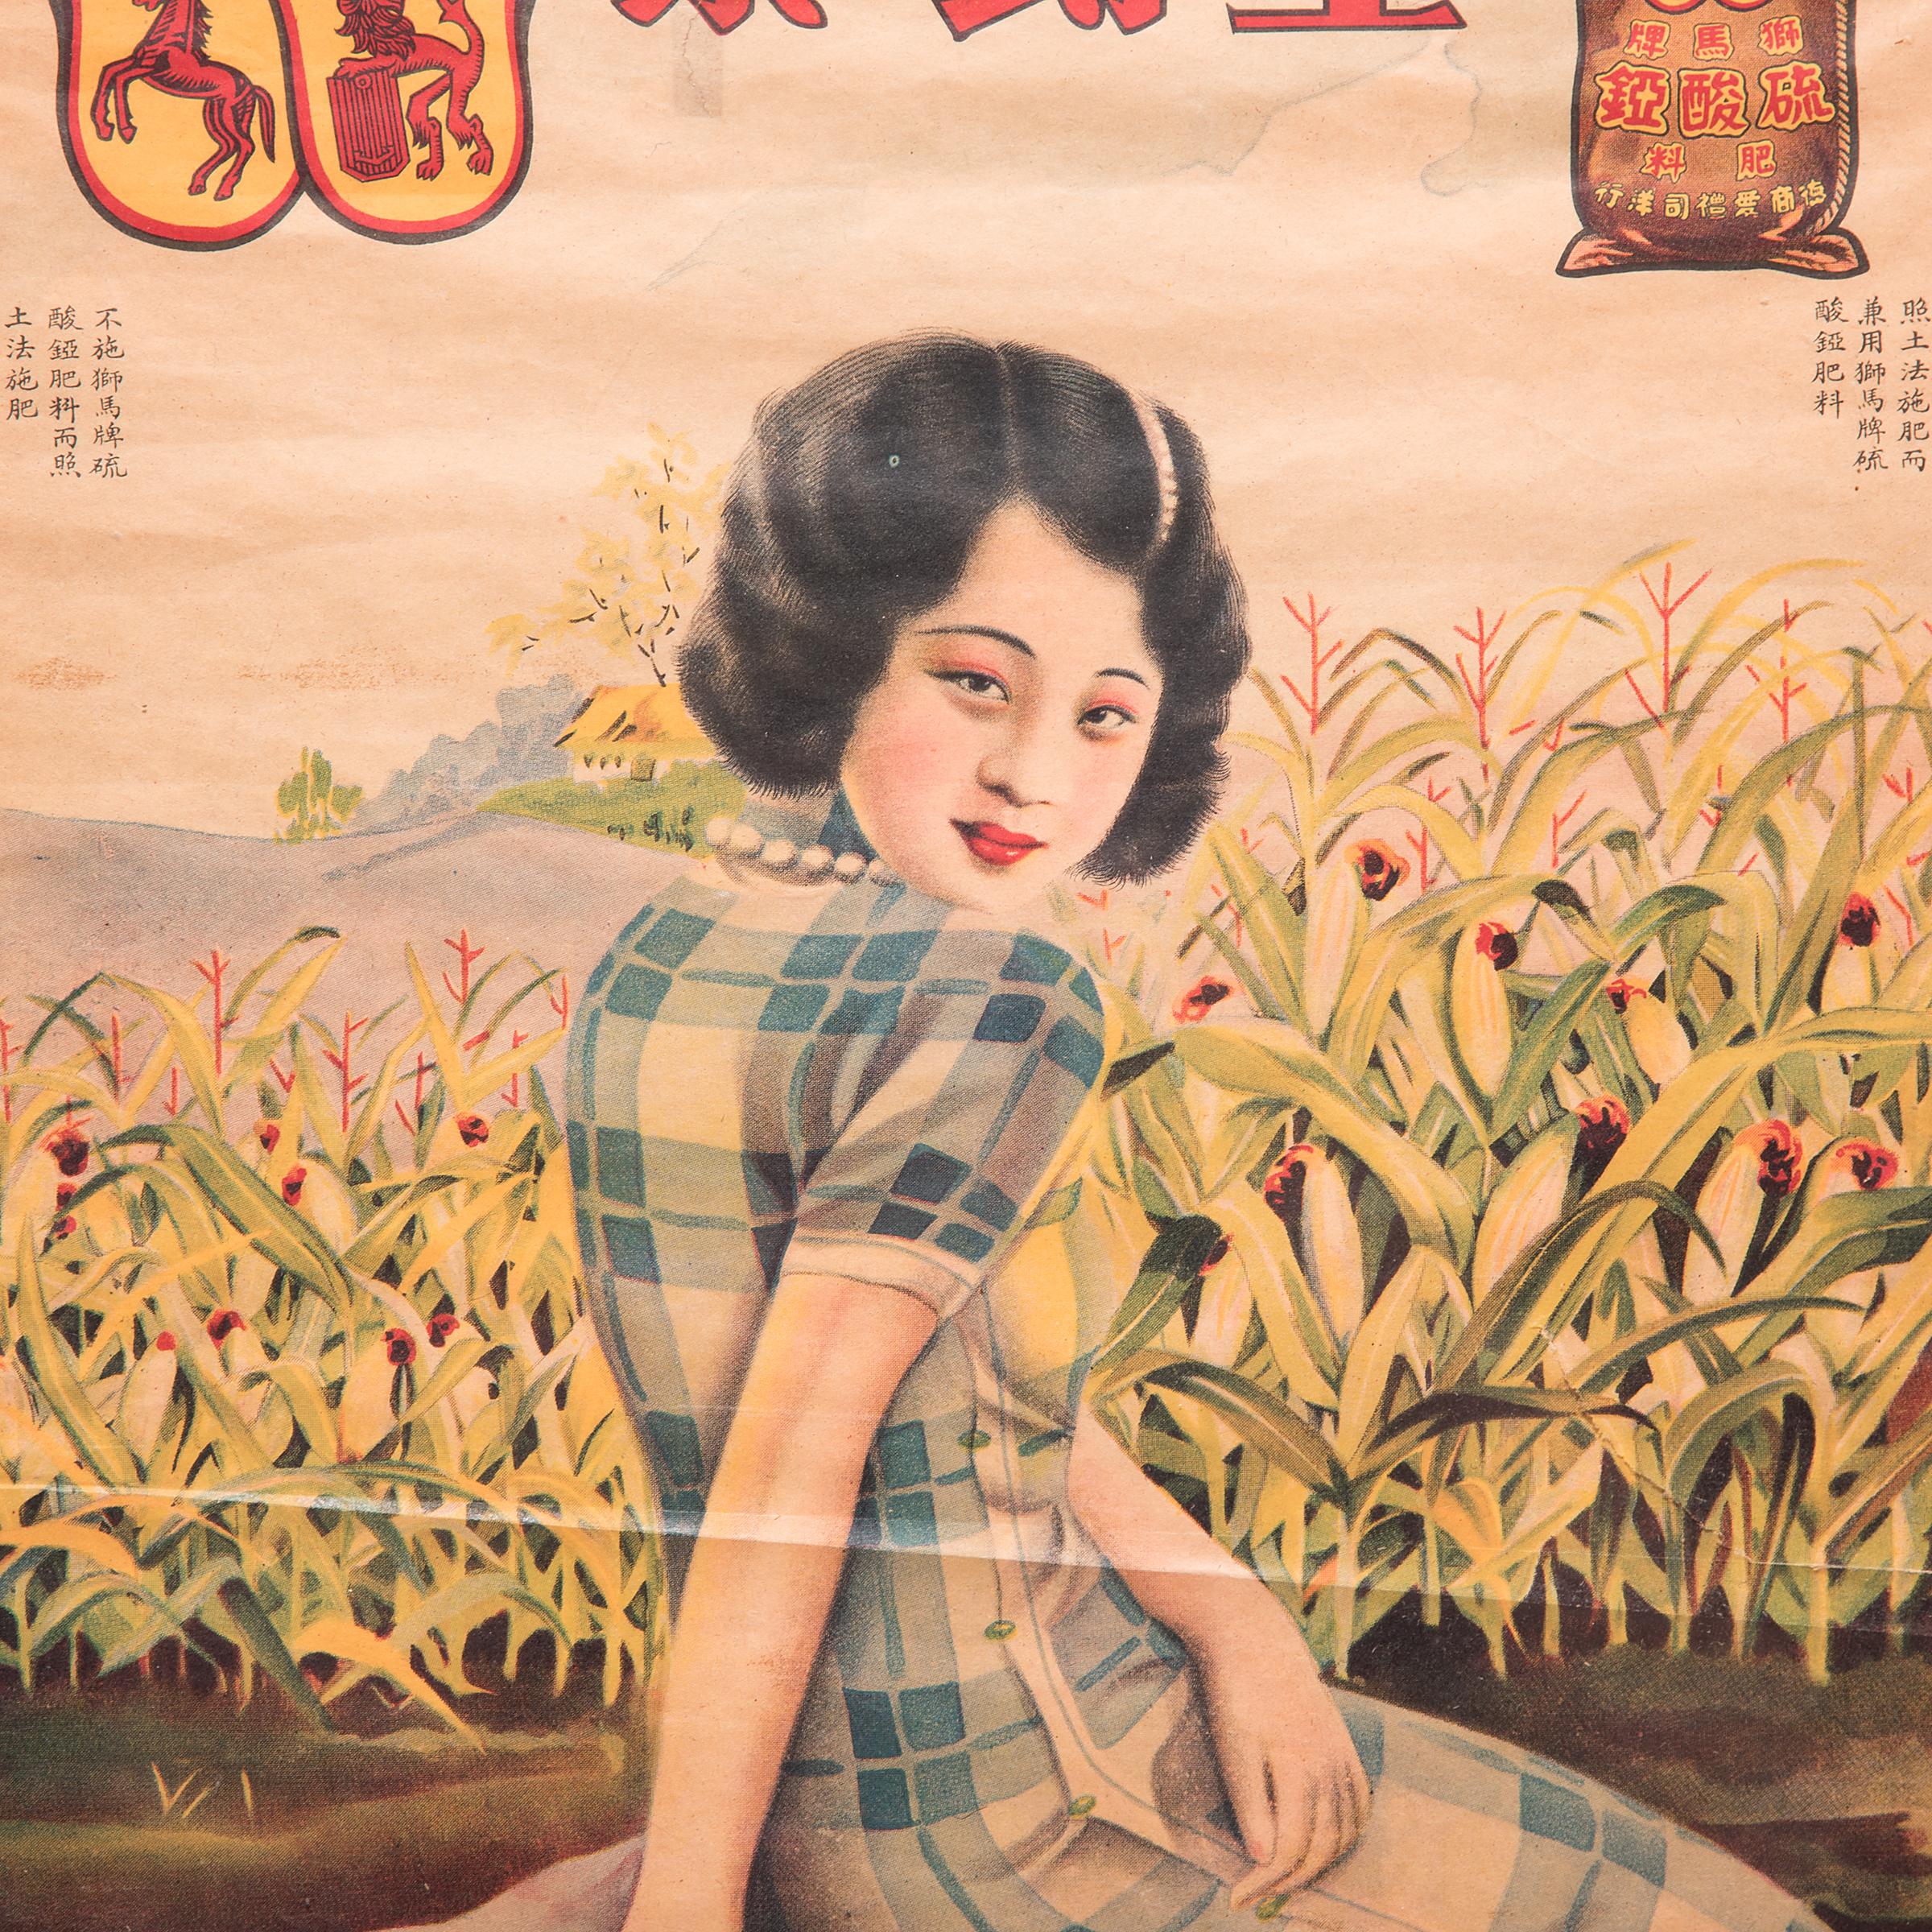 Beeinflusst durch die westliche Werbung wurden Werbeplakate, die schöne Frauen in moderner Umgebung zeigten, in den 1920er und 1930er Jahren in China populär. Plakate wie dieses wurden zum Symbol für Wohlstand und Glück und wurden von chinesischen